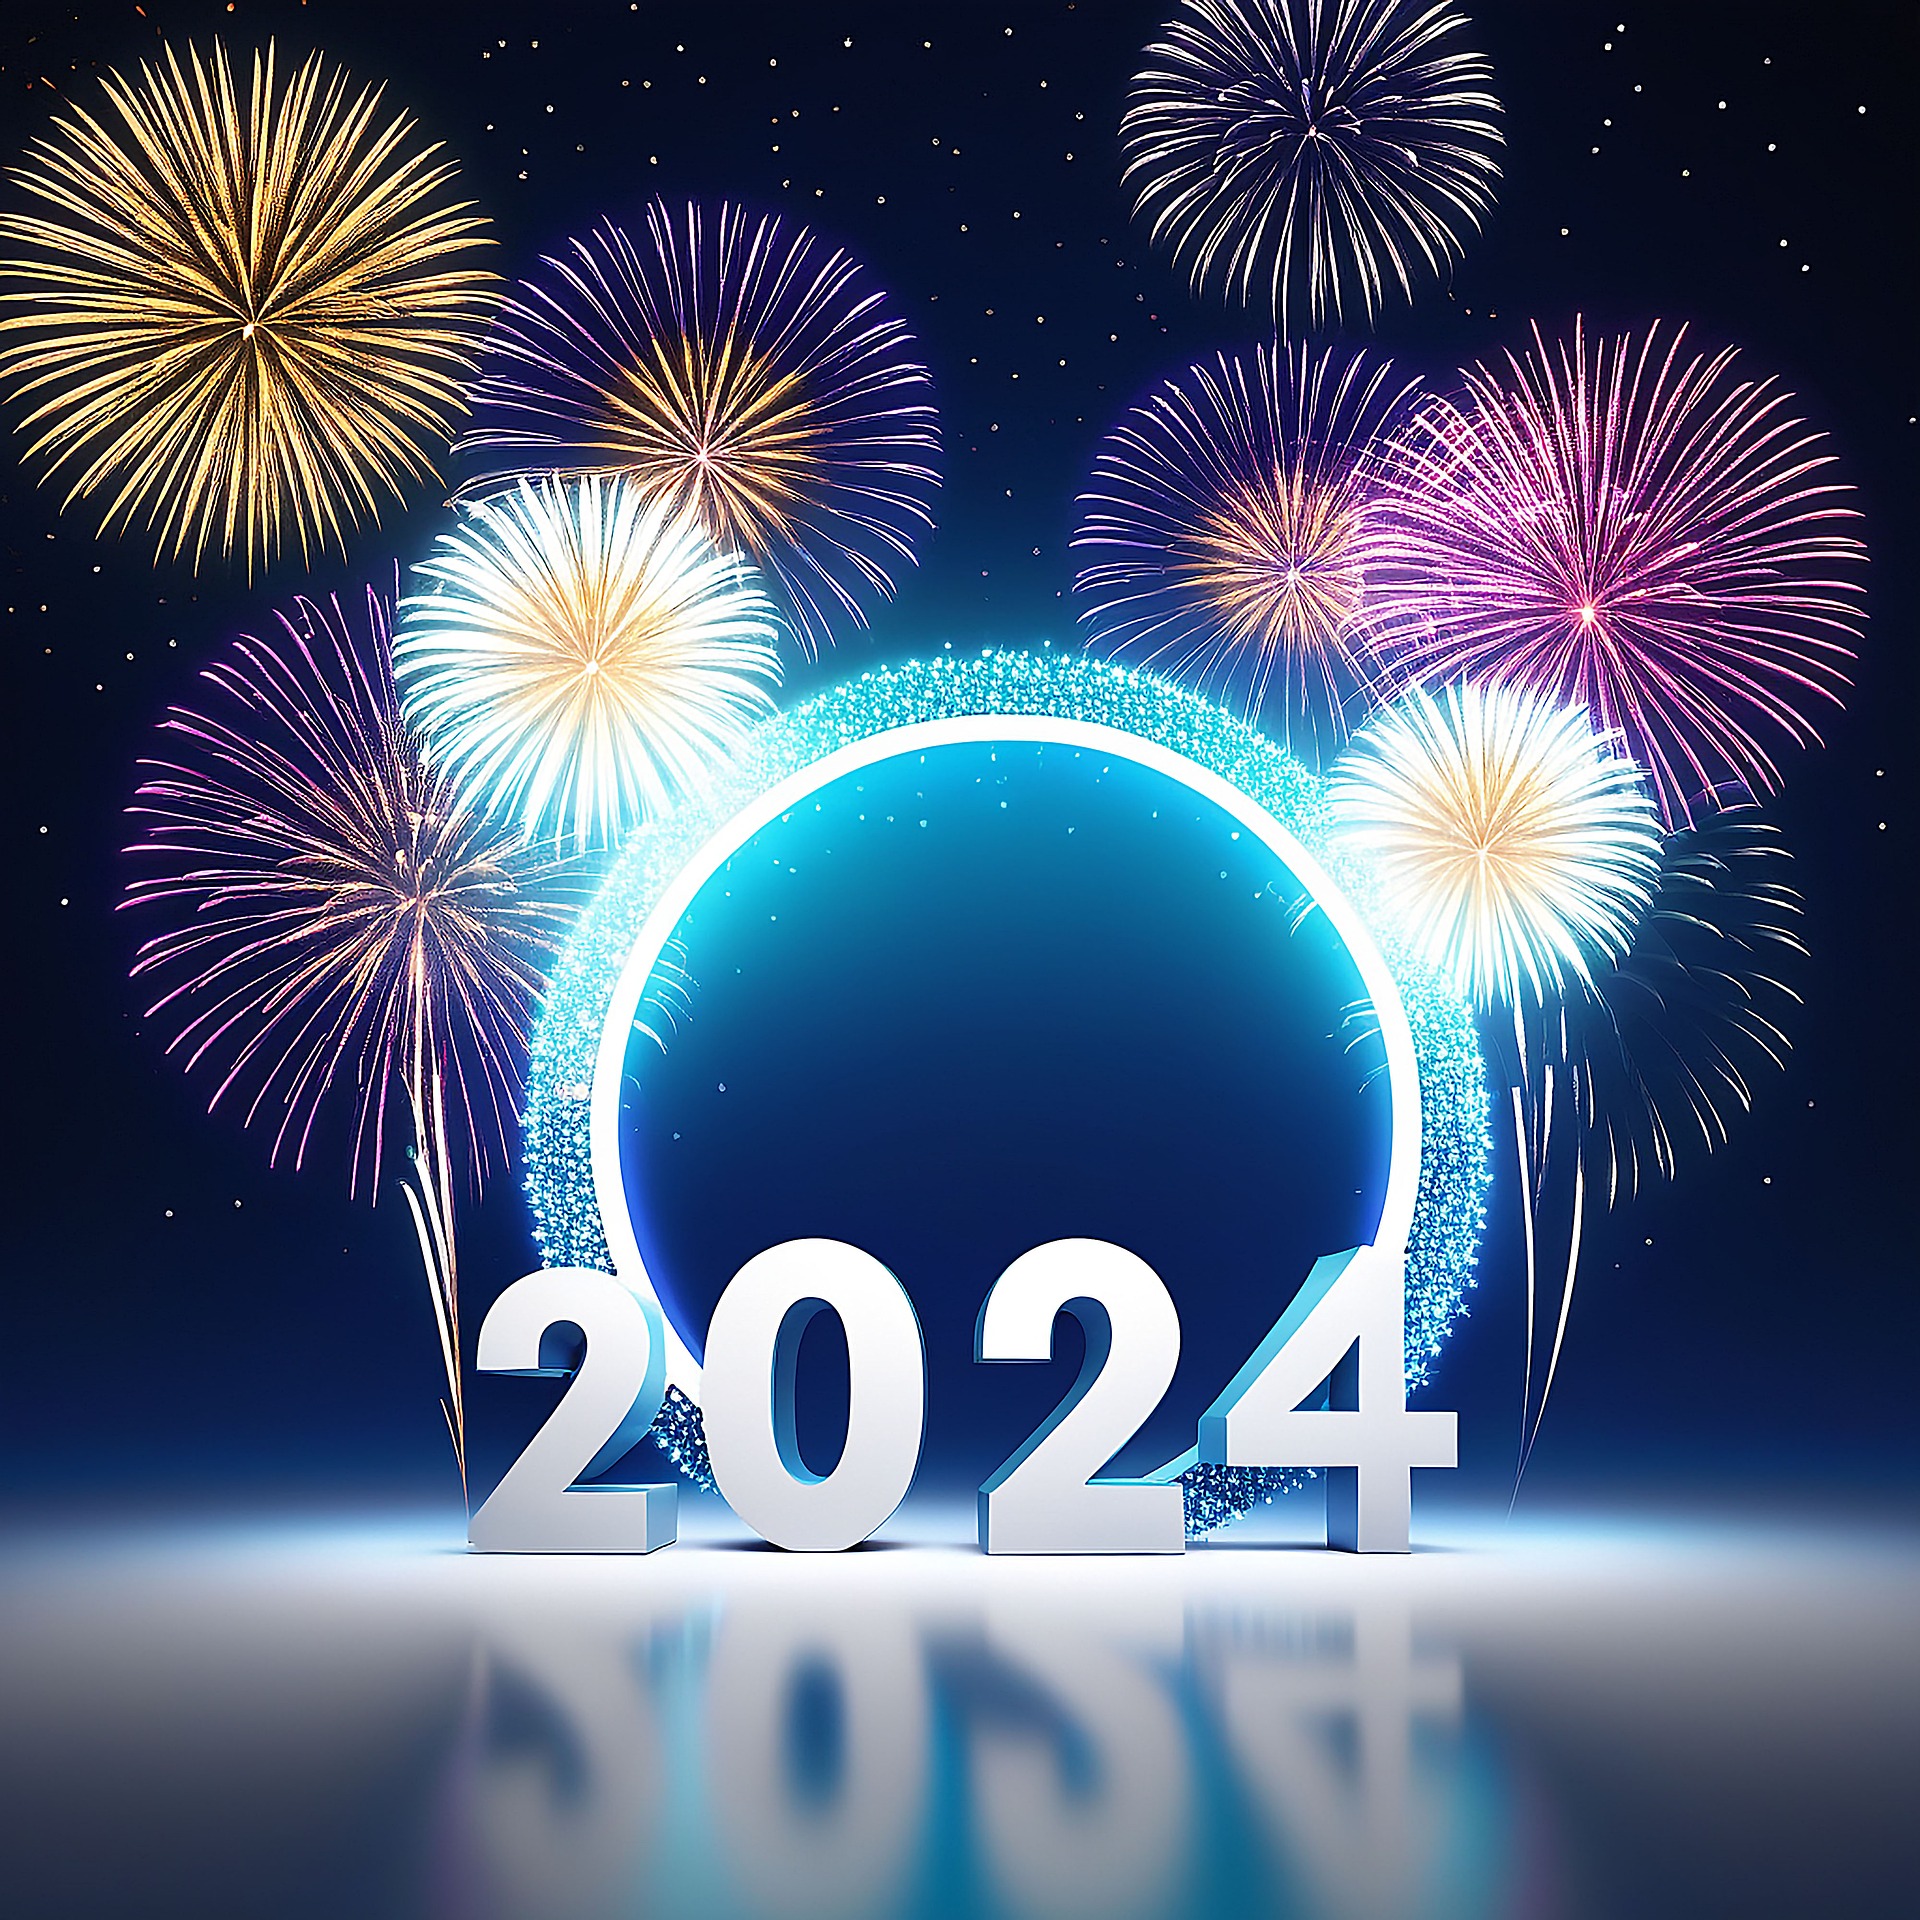 66 lời chúc mừng năm mới 2024 ngọt ngào, ý nghĩa gửi tặng gia đình, người yêu, bè bạn - Ảnh 8.